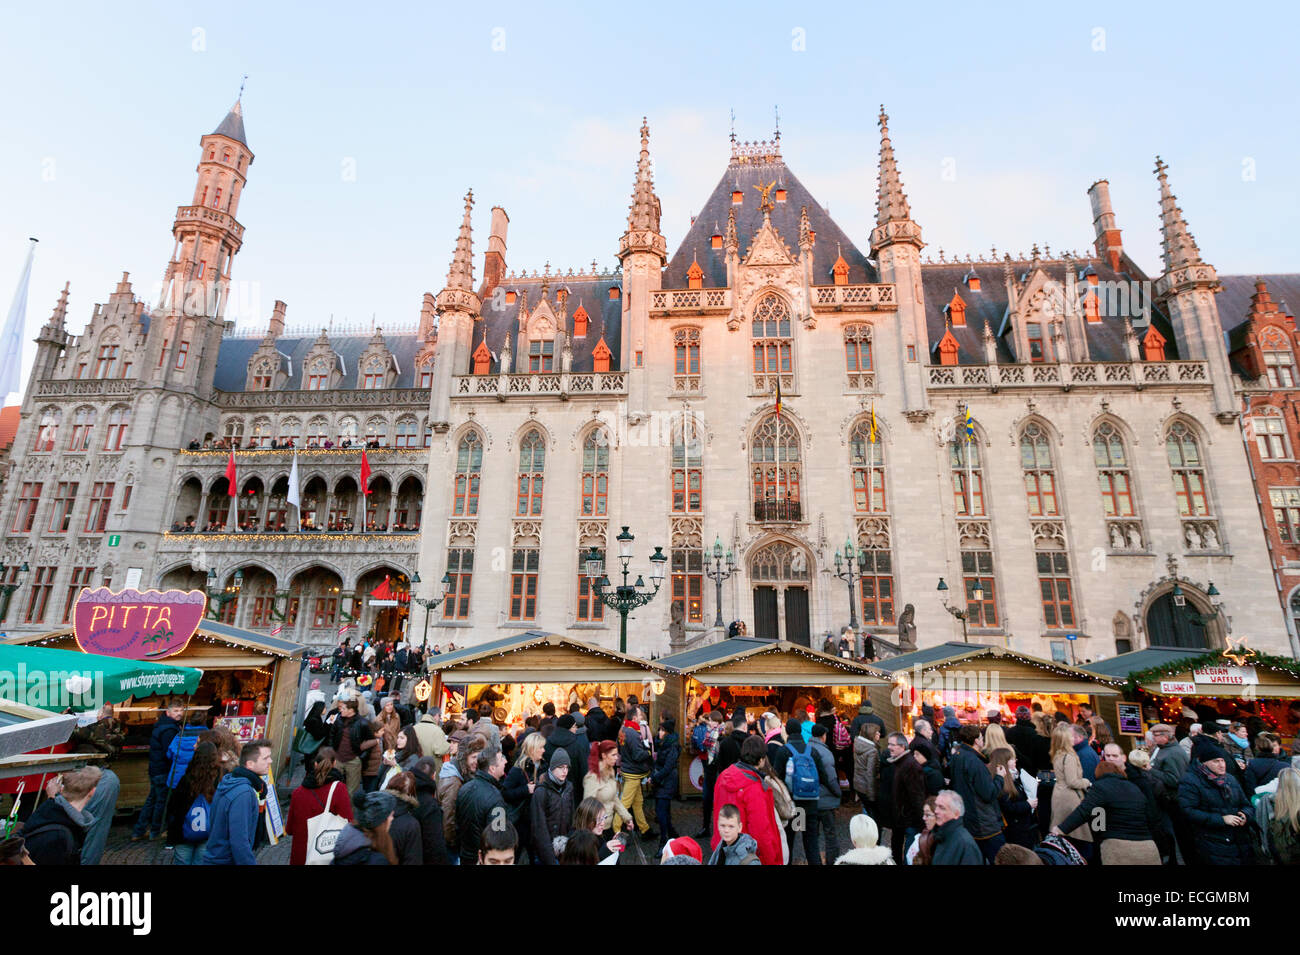 Volk und Stände auf dem Weihnachtsmarkt, Brügge, Belgien Stockfoto